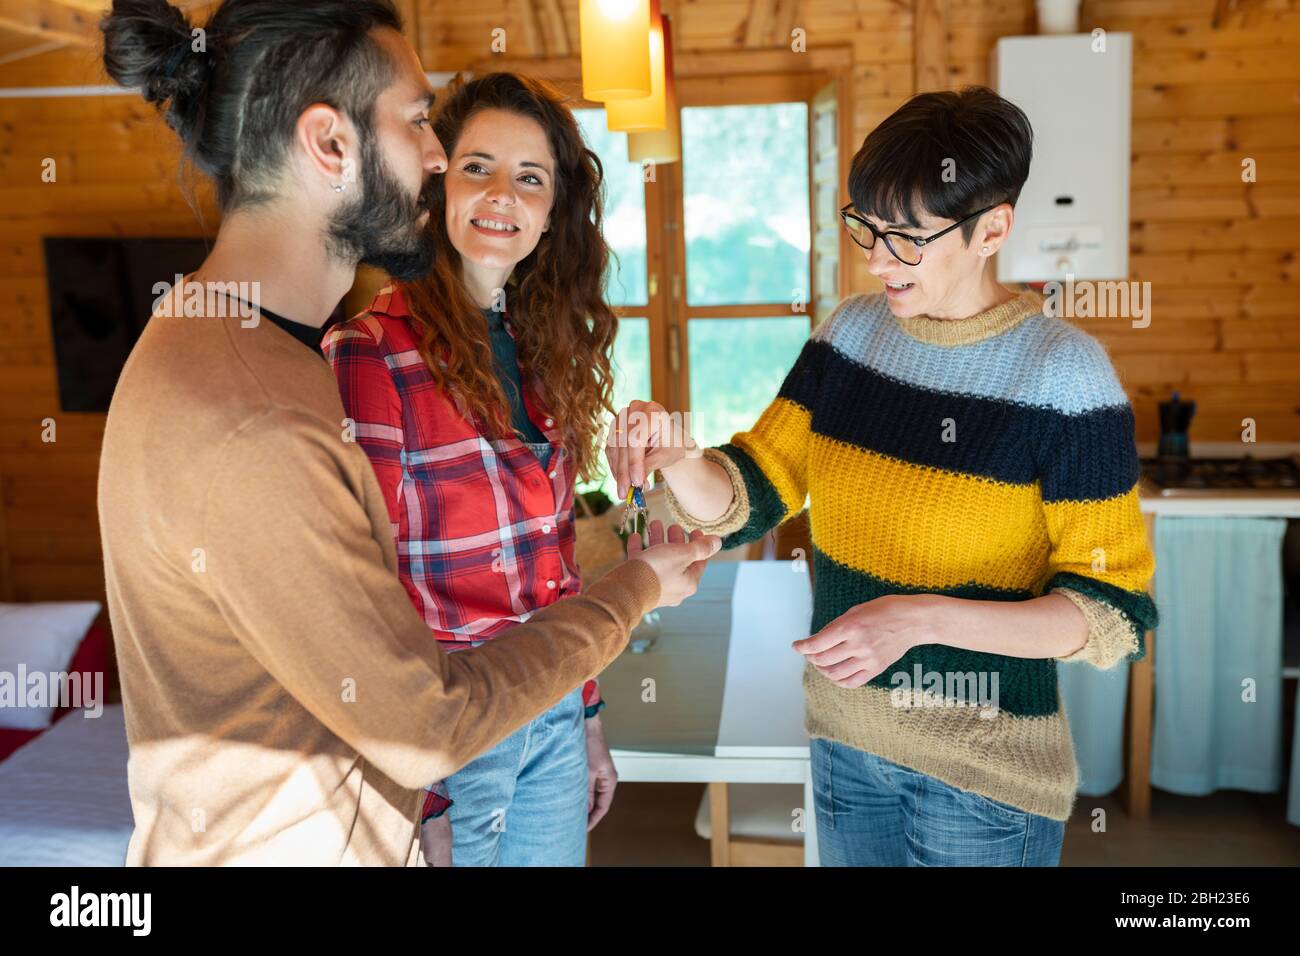 Gastgeber begrüßen junges Paar in einer Hütte auf dem Land Übergabe des Hausschlüssels Stockfoto